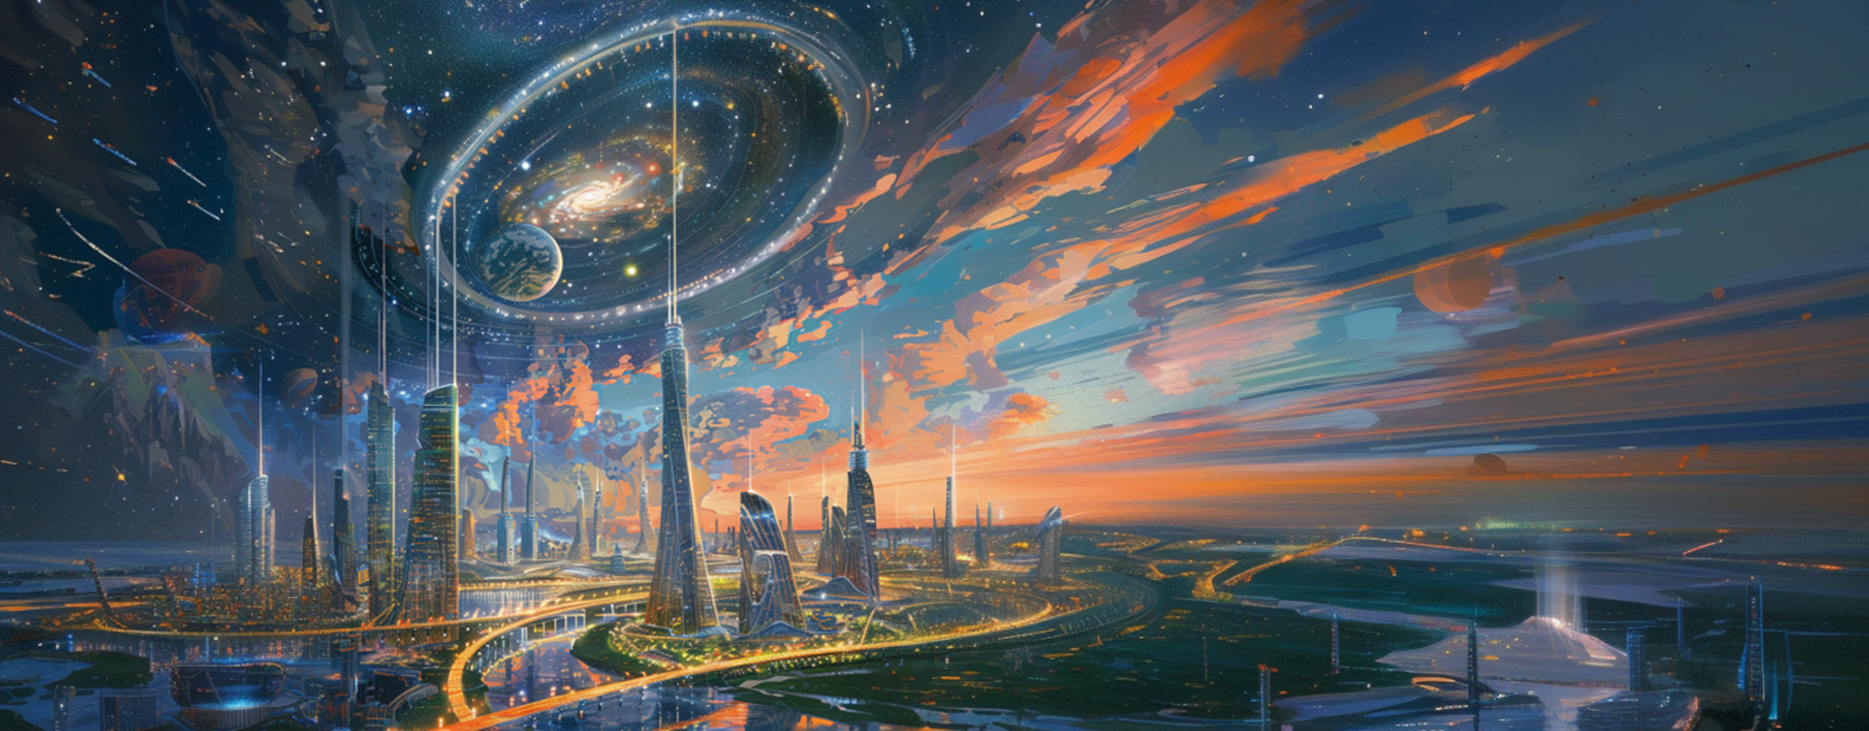 Новый способ заглянуть в будущее: АСИ запускает конкурс научной фантастики "Россия 2050"